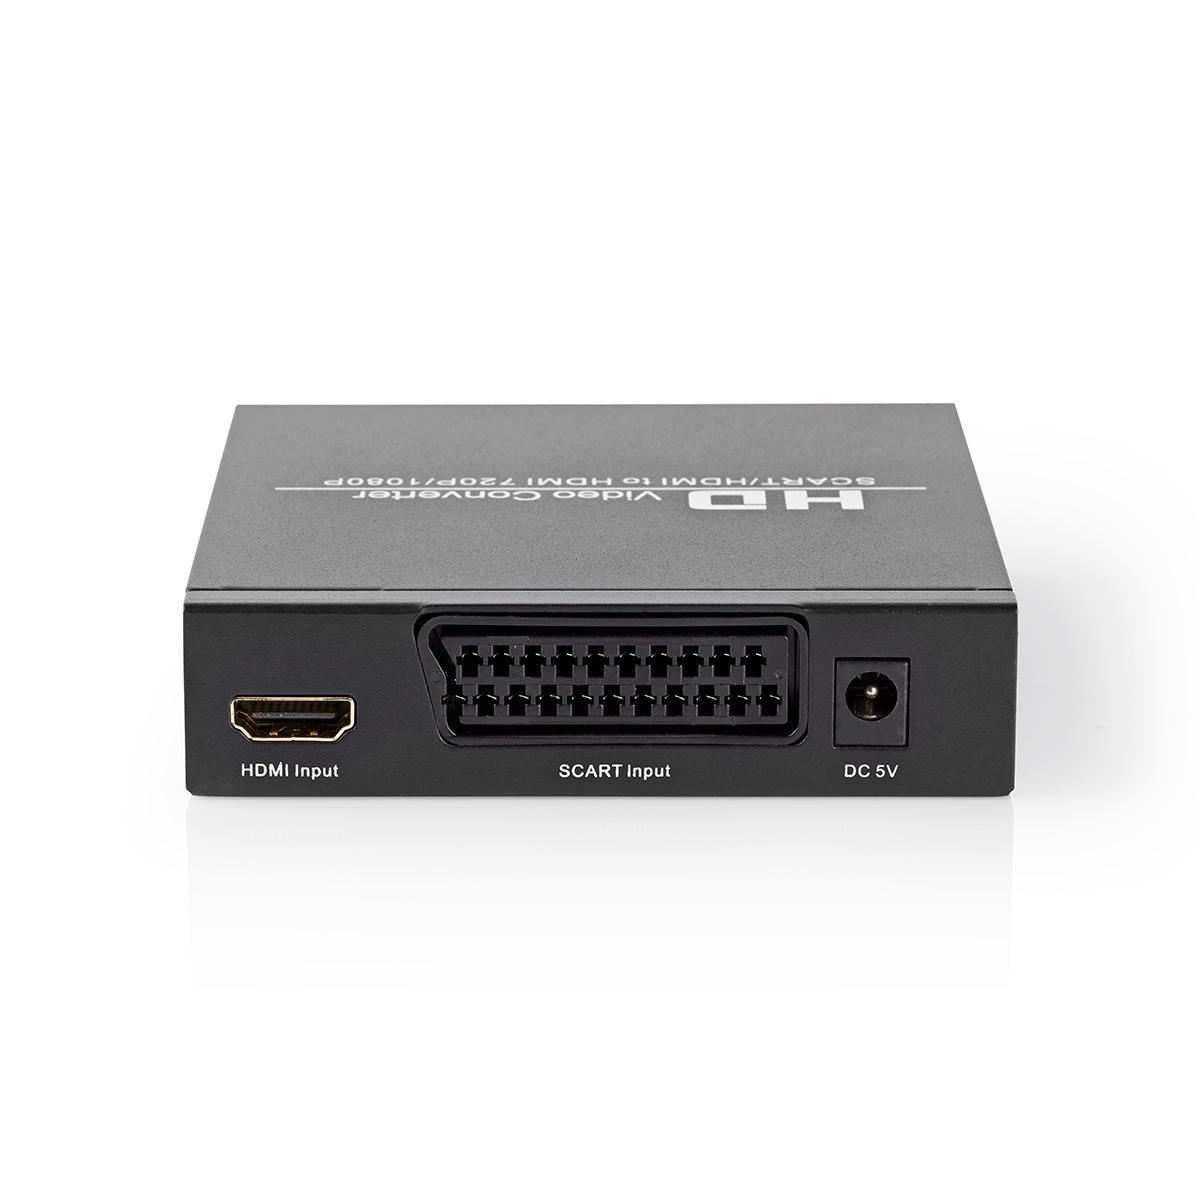 HDMI VCON3452AT NEDIS Converter